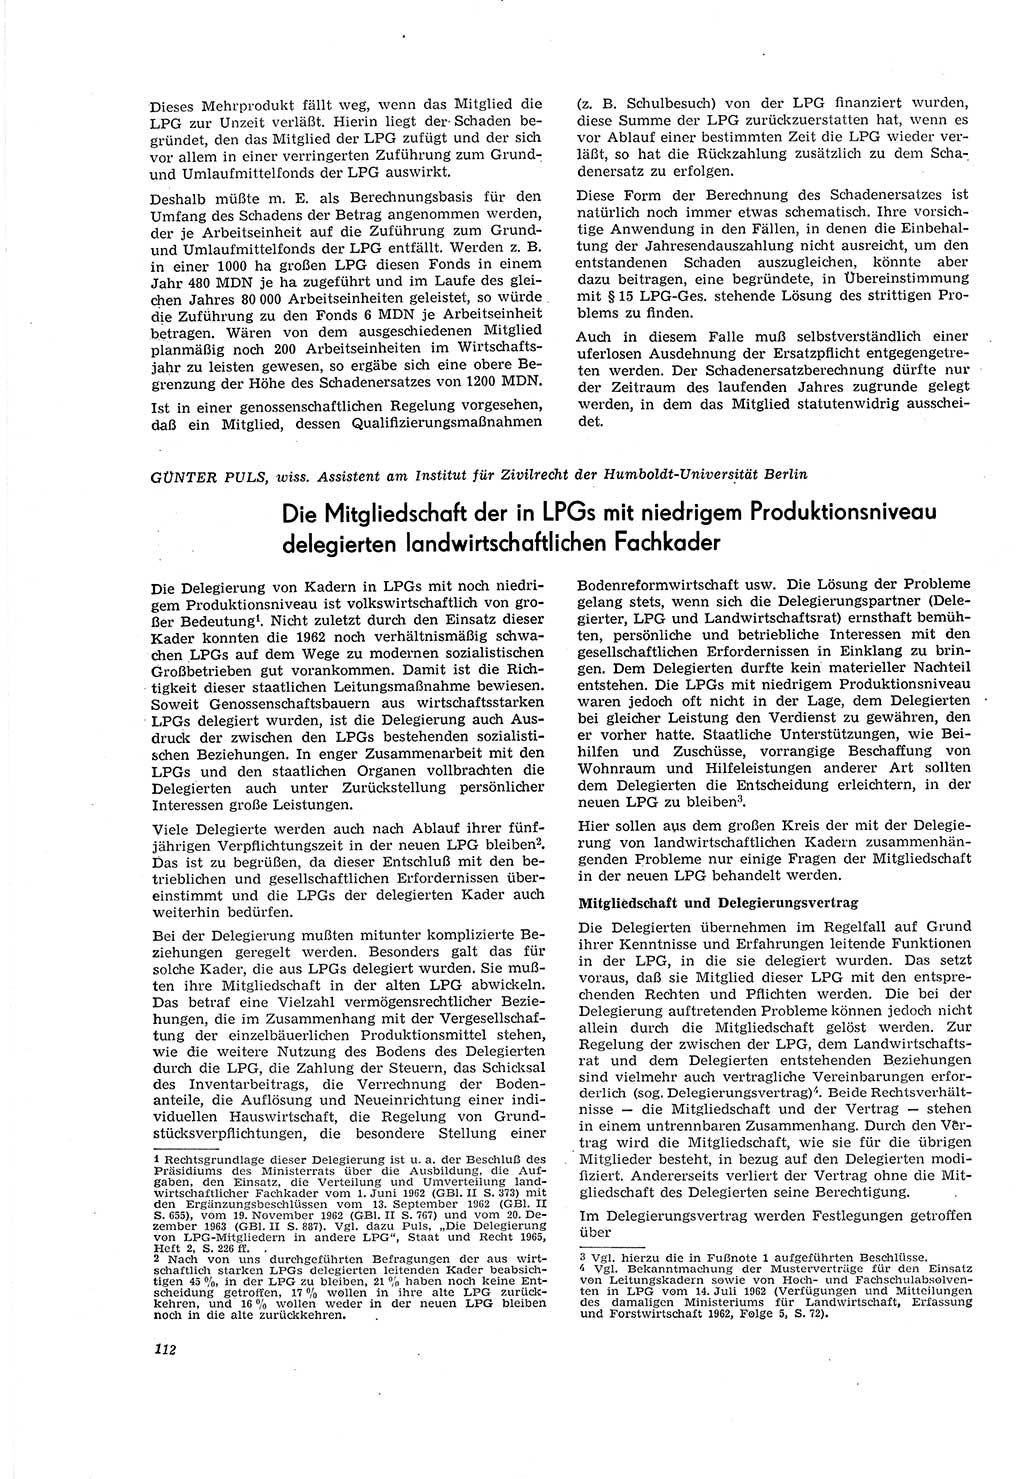 Neue Justiz (NJ), Zeitschrift für Recht und Rechtswissenschaft [Deutsche Demokratische Republik (DDR)], 20. Jahrgang 1966, Seite 112 (NJ DDR 1966, S. 112)